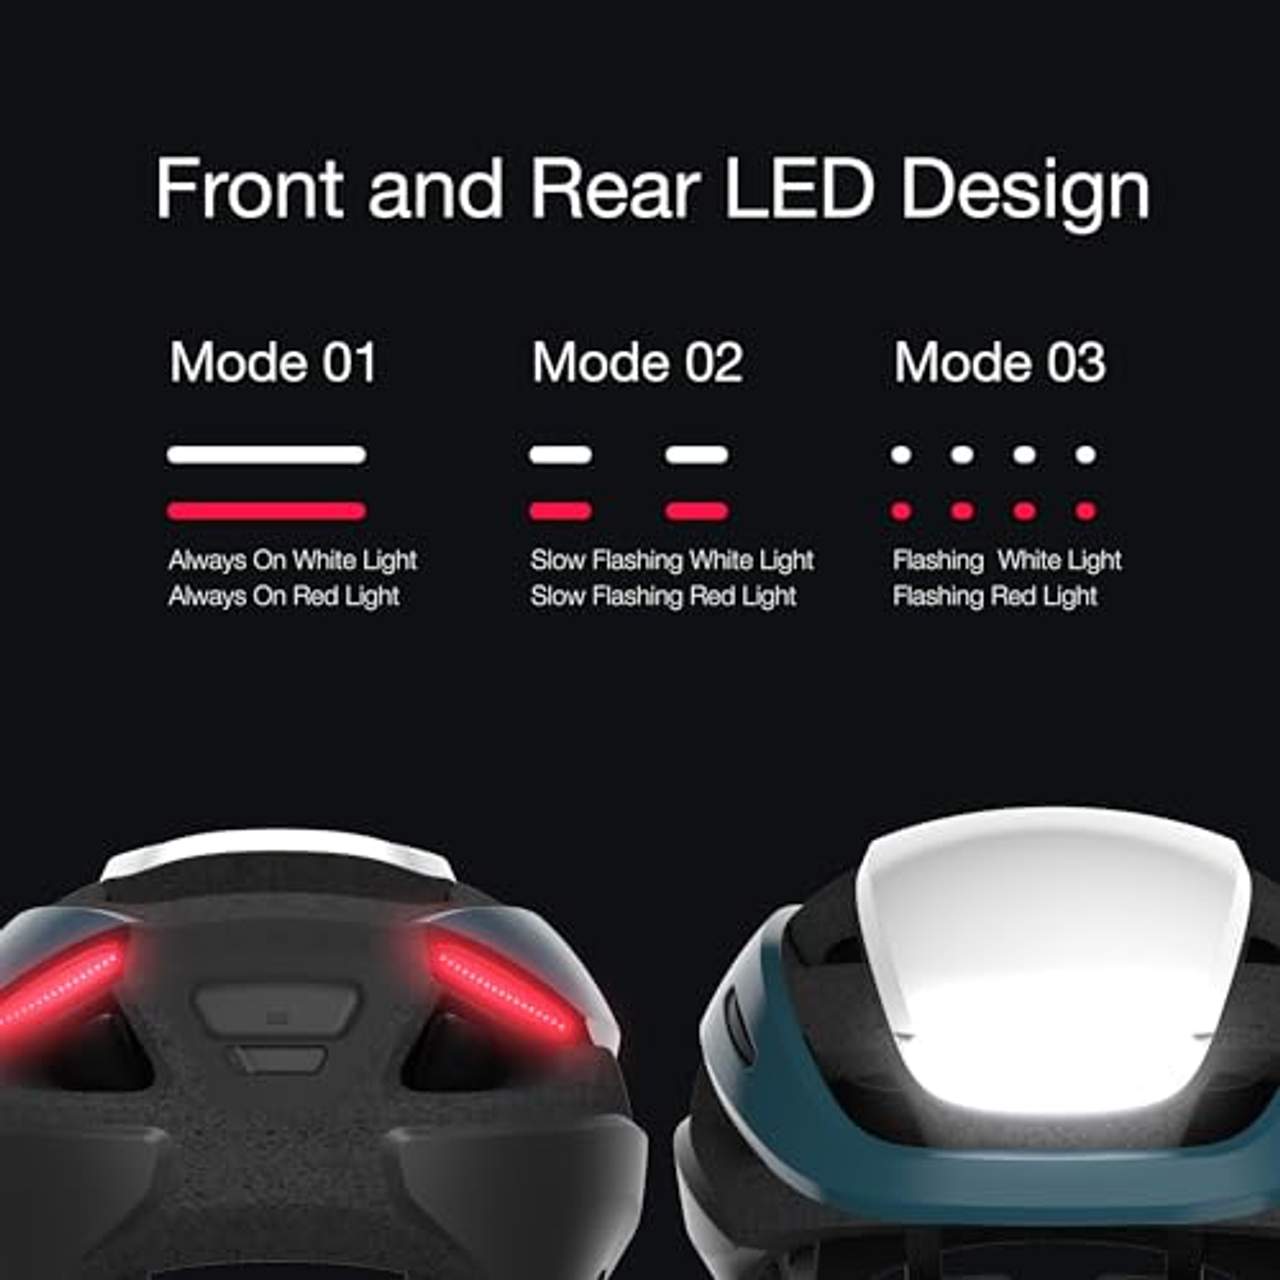 Lumos Ultra Smart-Helm Vorder- und Rücklicht (LED) | Blinker | Bremslichter | Bluetooth-Verbindung